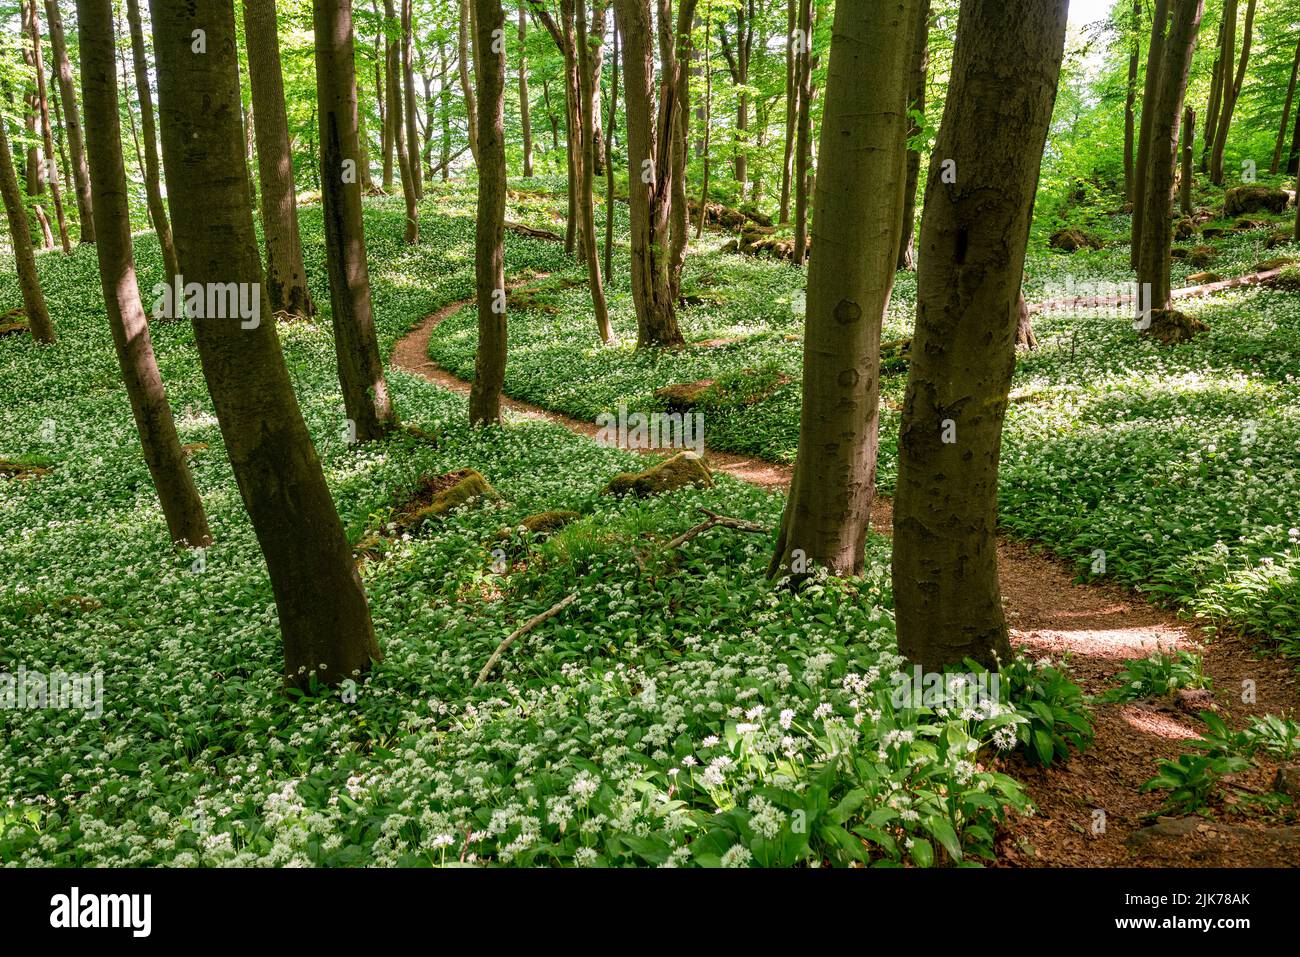 Sentier de randonnée pittoresque et sinueux au milieu des ramsons fleuris (ail sauvage) dans une forêt tranquille de printemps, Ith-HiLS-Weg, Ith, Weserbergland, Allemagne Banque D'Images